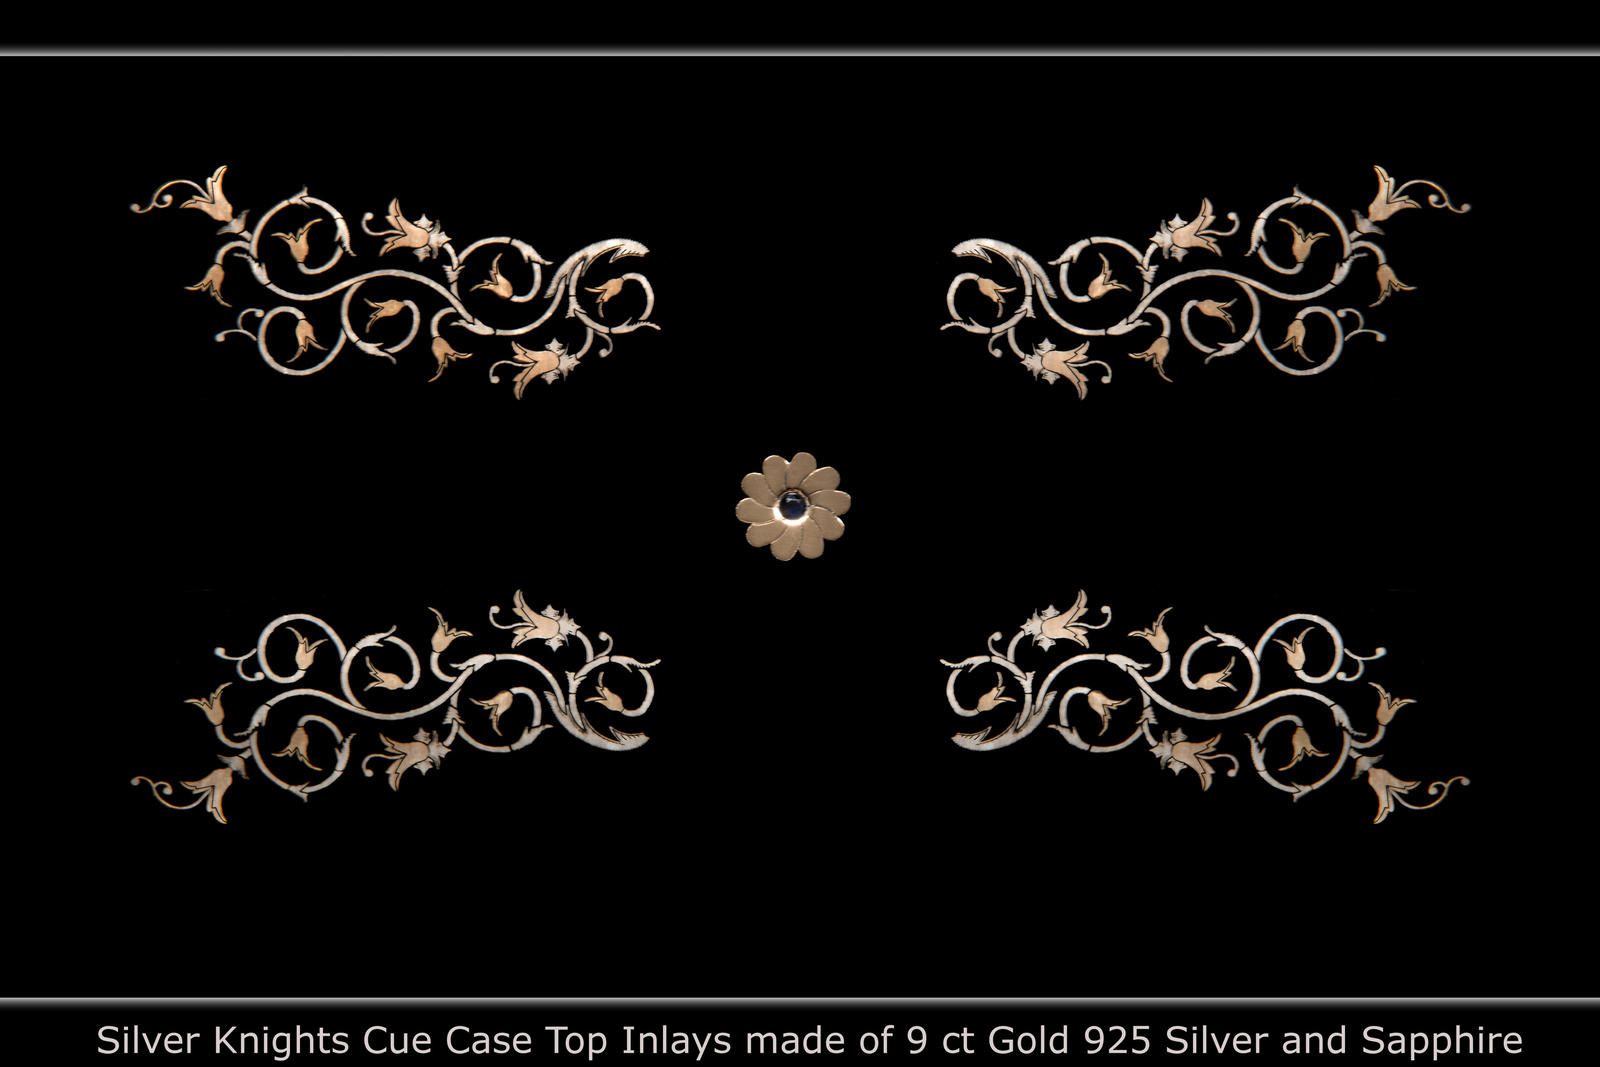 Silver Knights Cue Case Top inlays